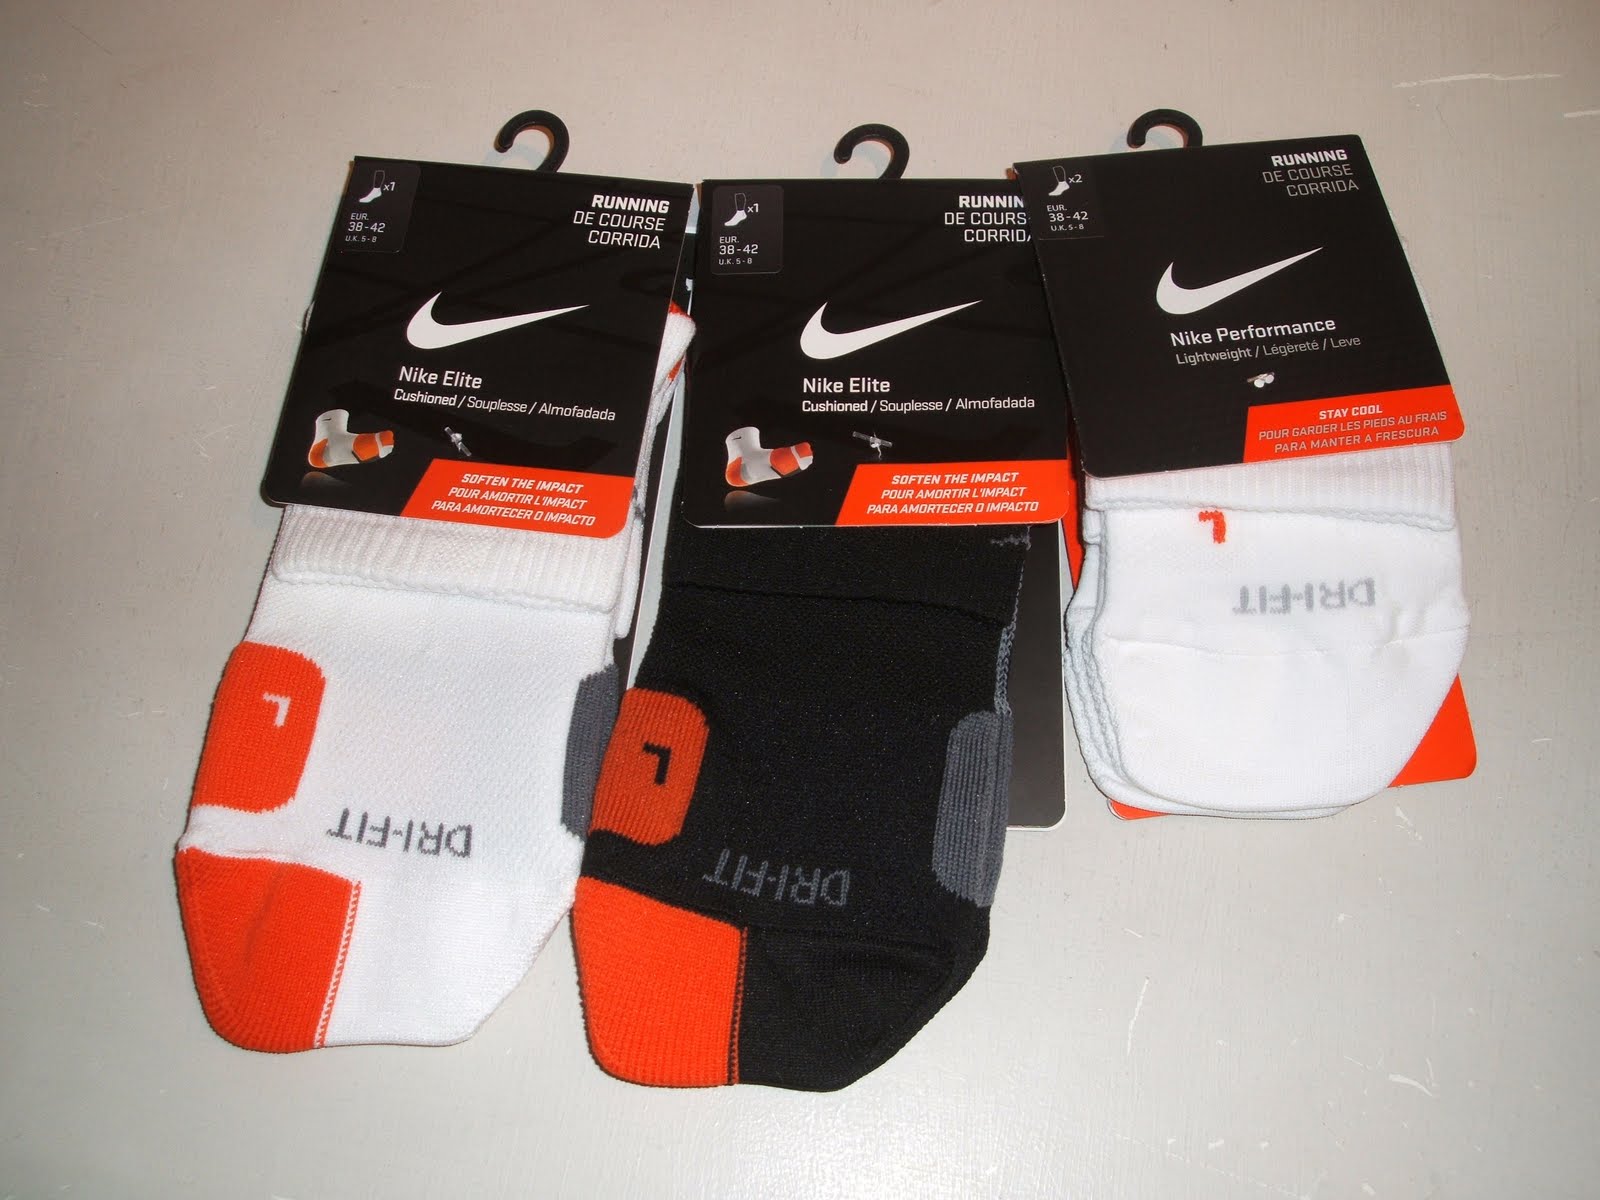 Runability: Nike + Sports Bands and Nike Elite Socks in